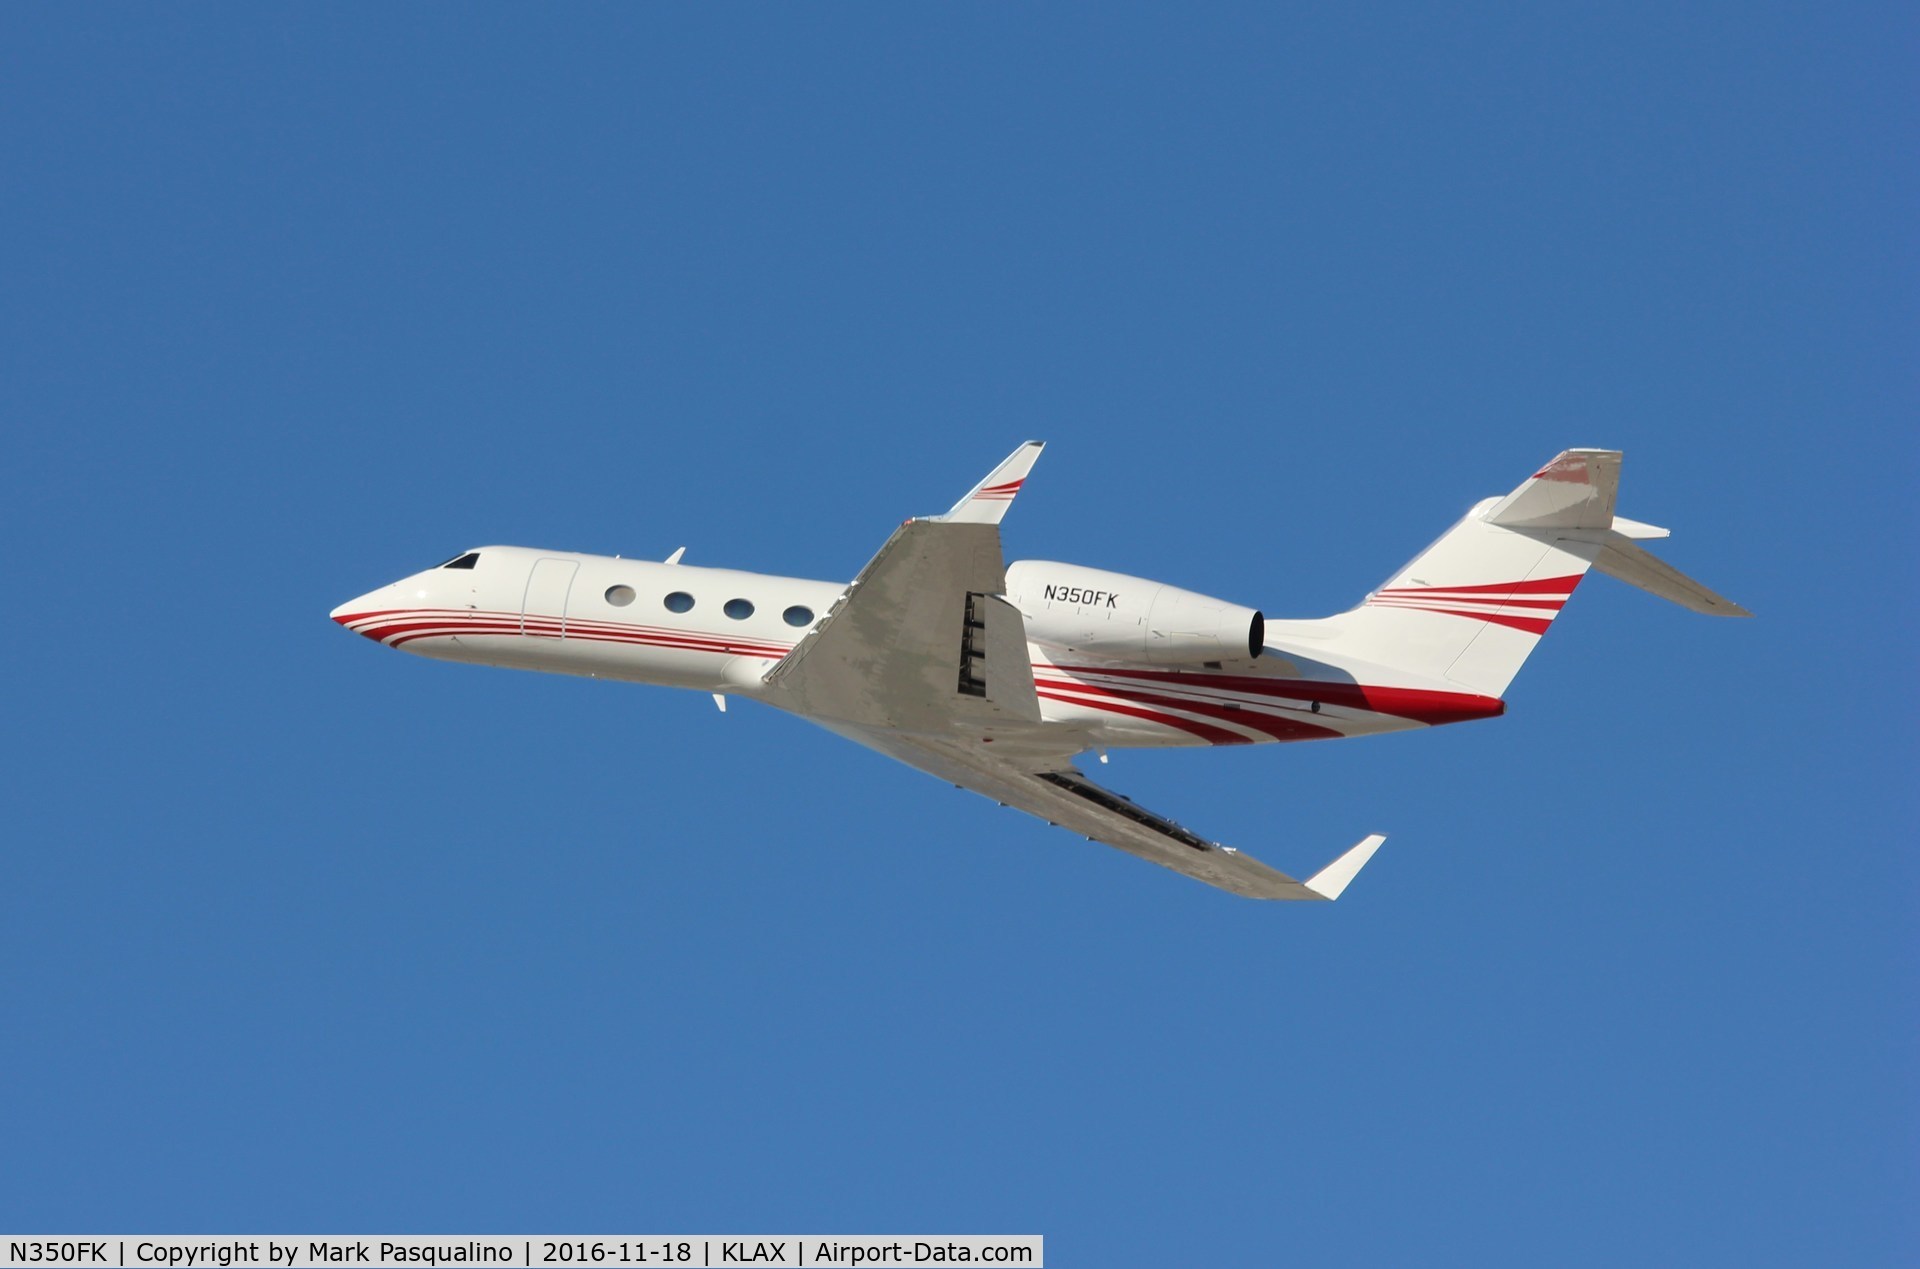 N350FK, 2006 Gulfstream Aerospace G-IV (G350) C/N 4040, Gulfstream G-IV